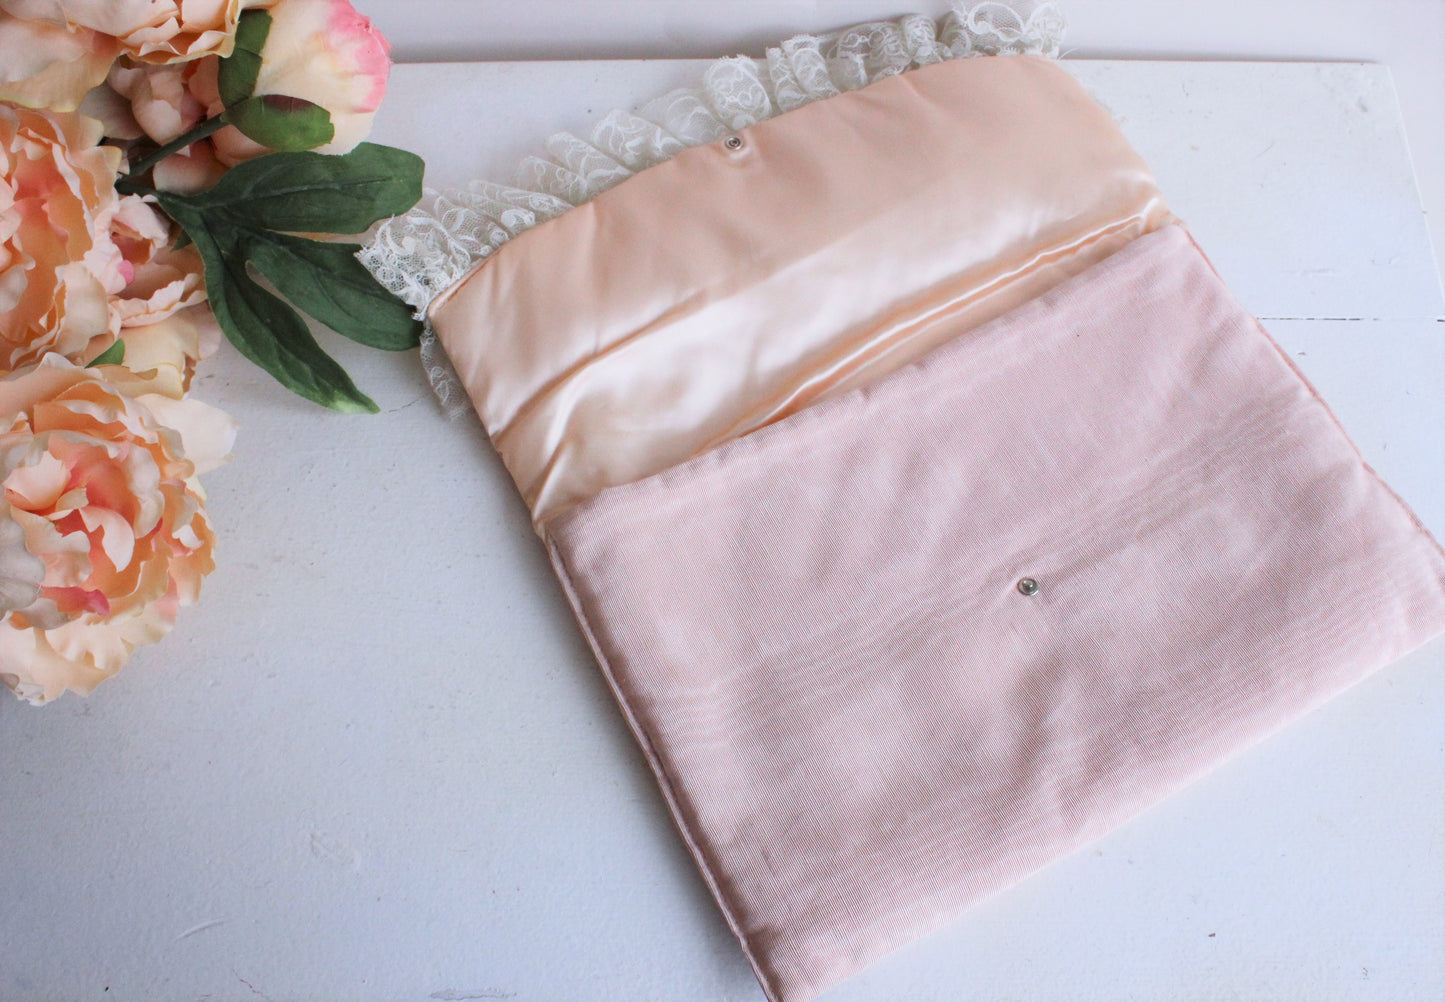 Vintage 1990s Victoria's Secret Pink Moire Taffeta Lingerie Bag